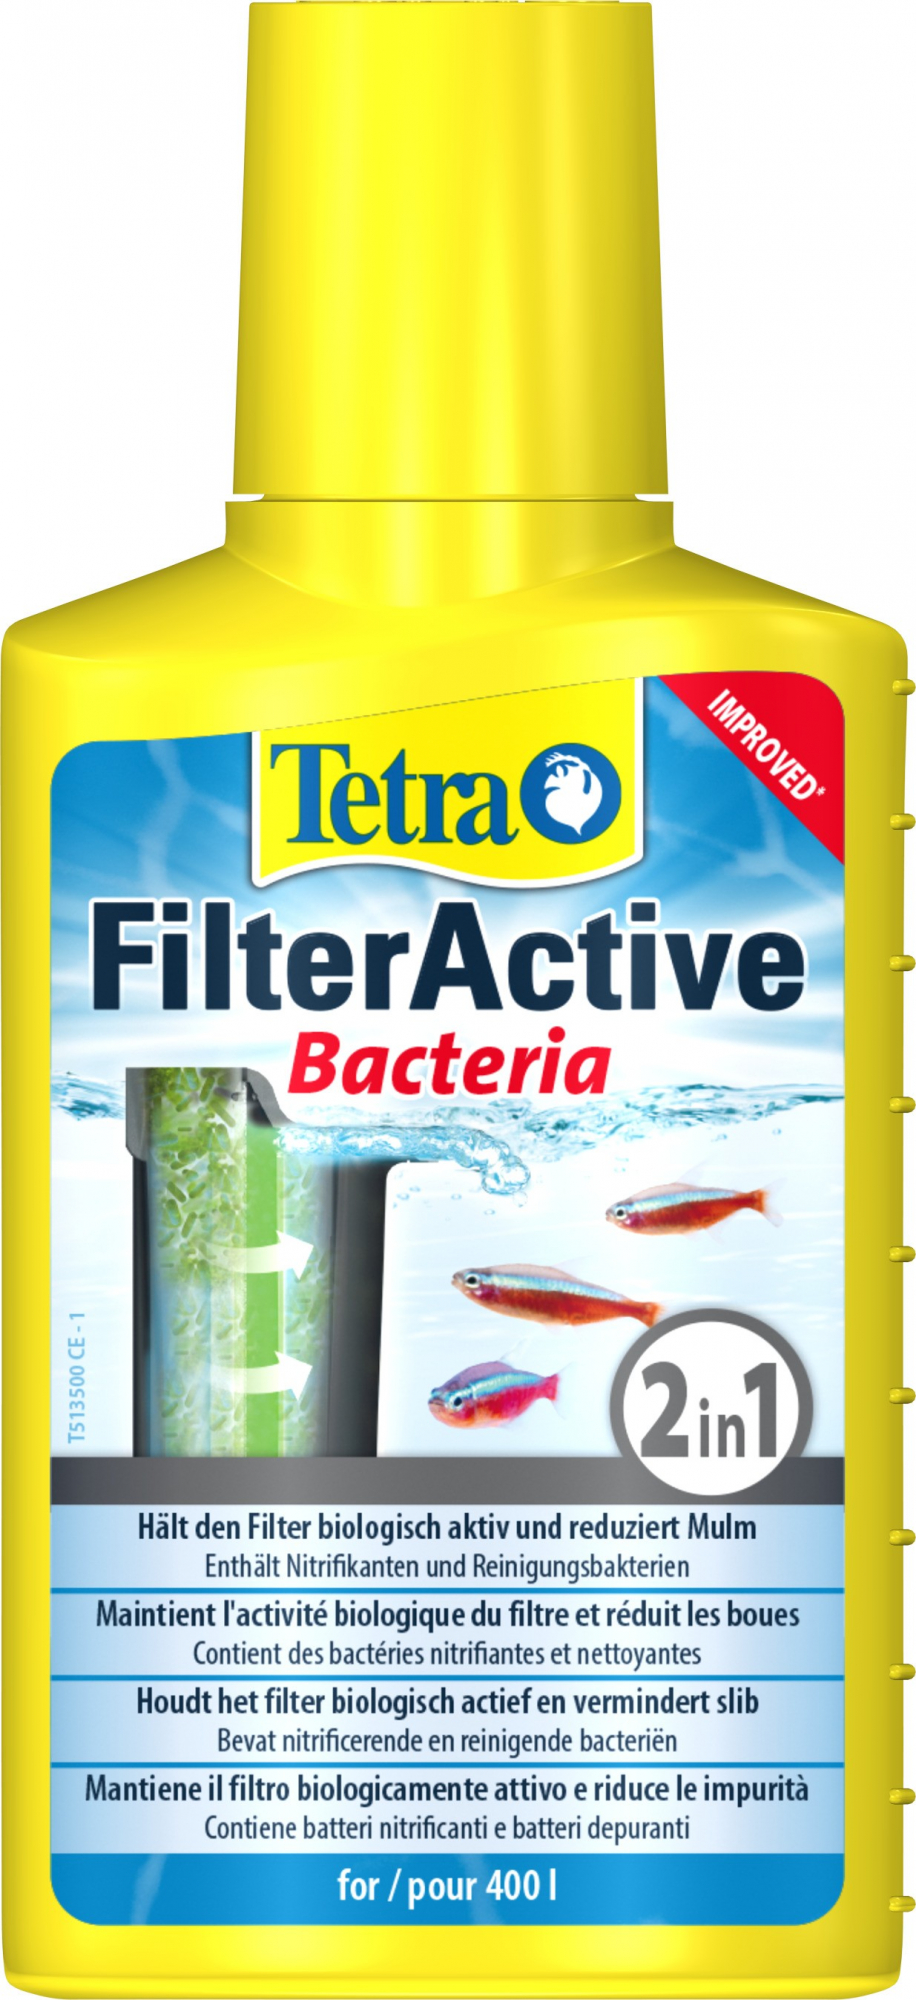 Tetra FilterActive ativação do filtro